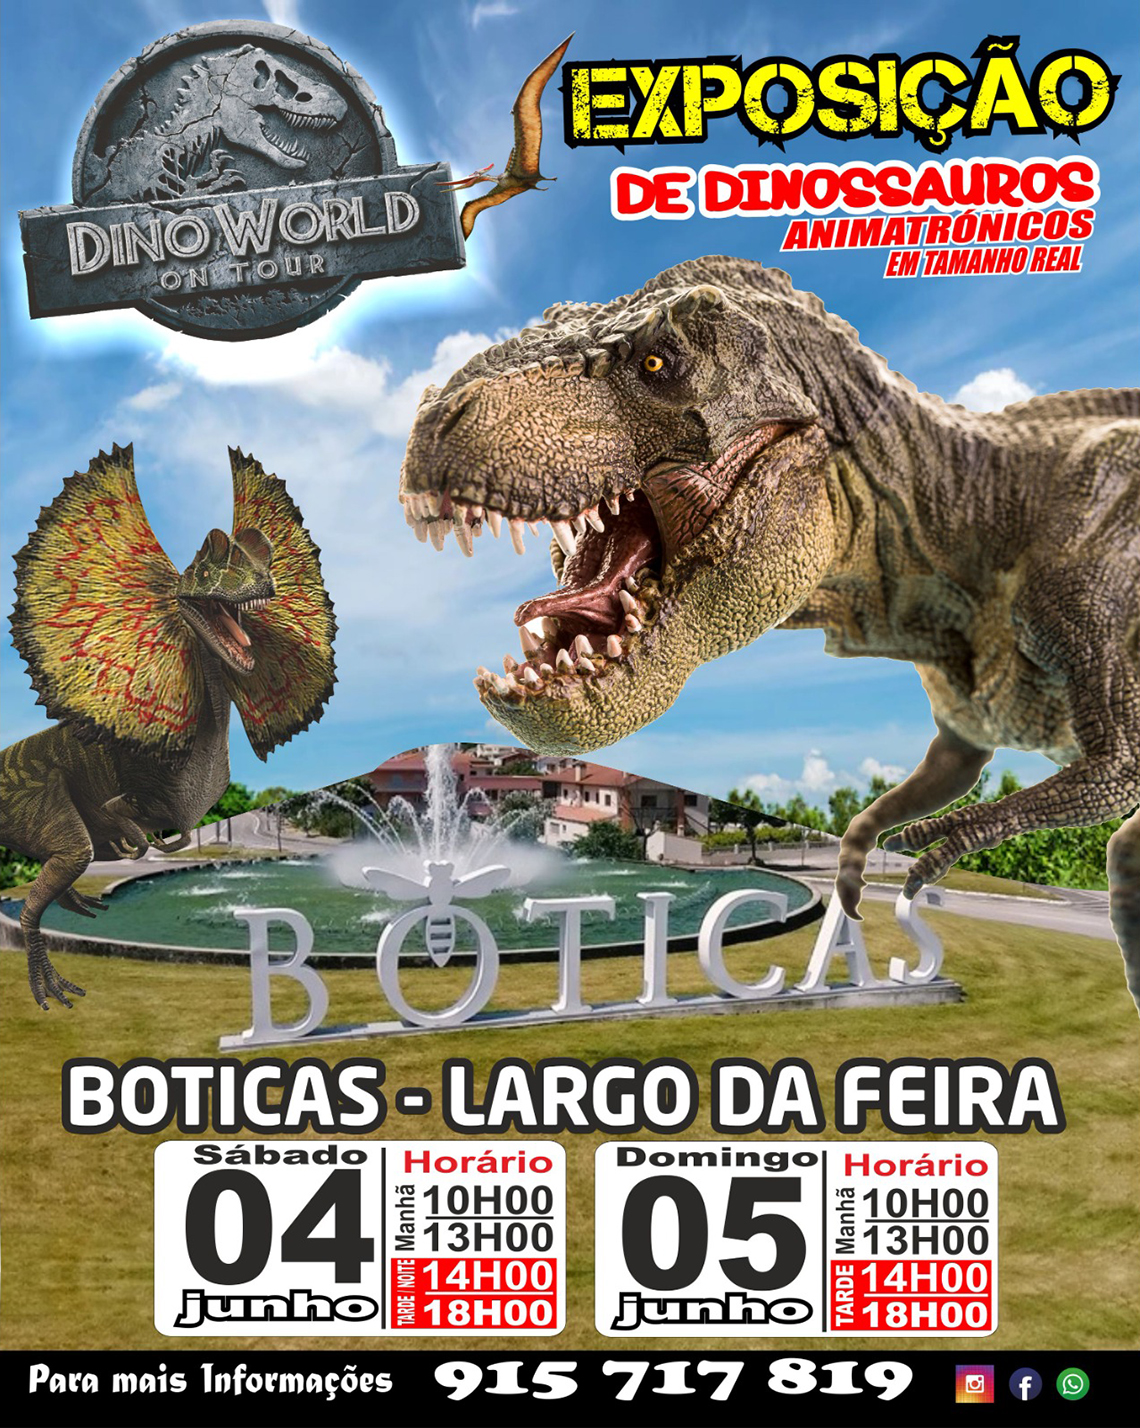 Dino World on Tour: Exposição de Dinaussauros Animatrónicos em tamanho Real